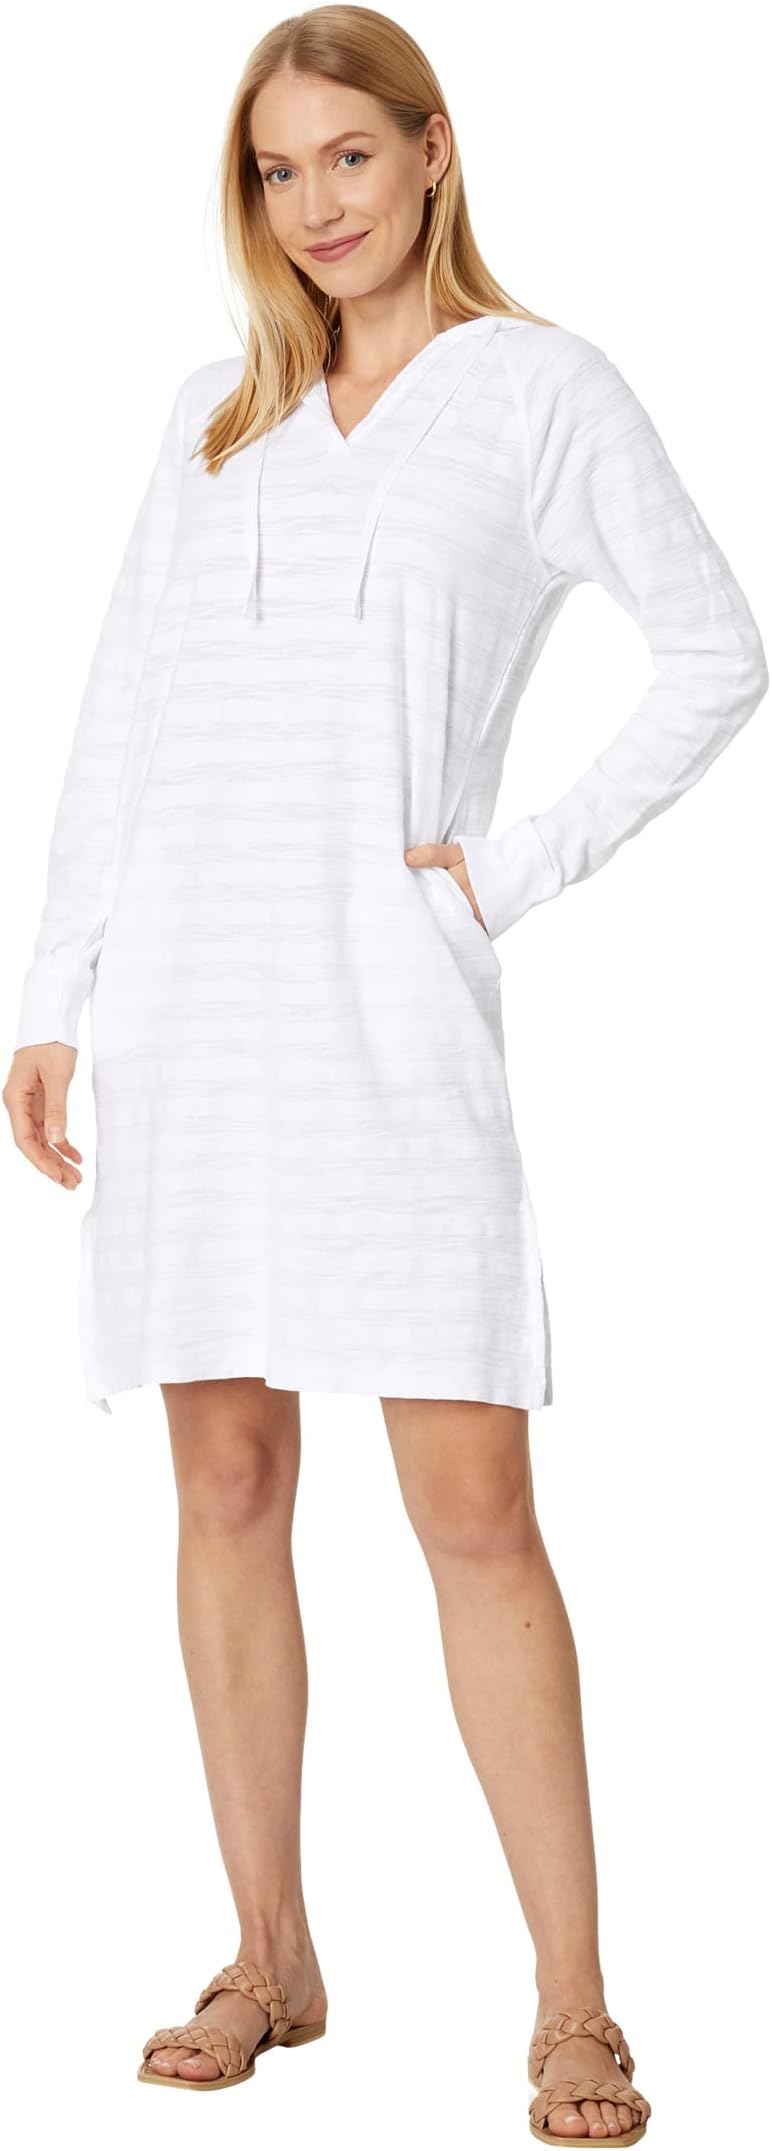 Платье с капюшоном и длинными рукавами из махровой ткани в полоску Shadow Stripe Mod-o-doc, белый